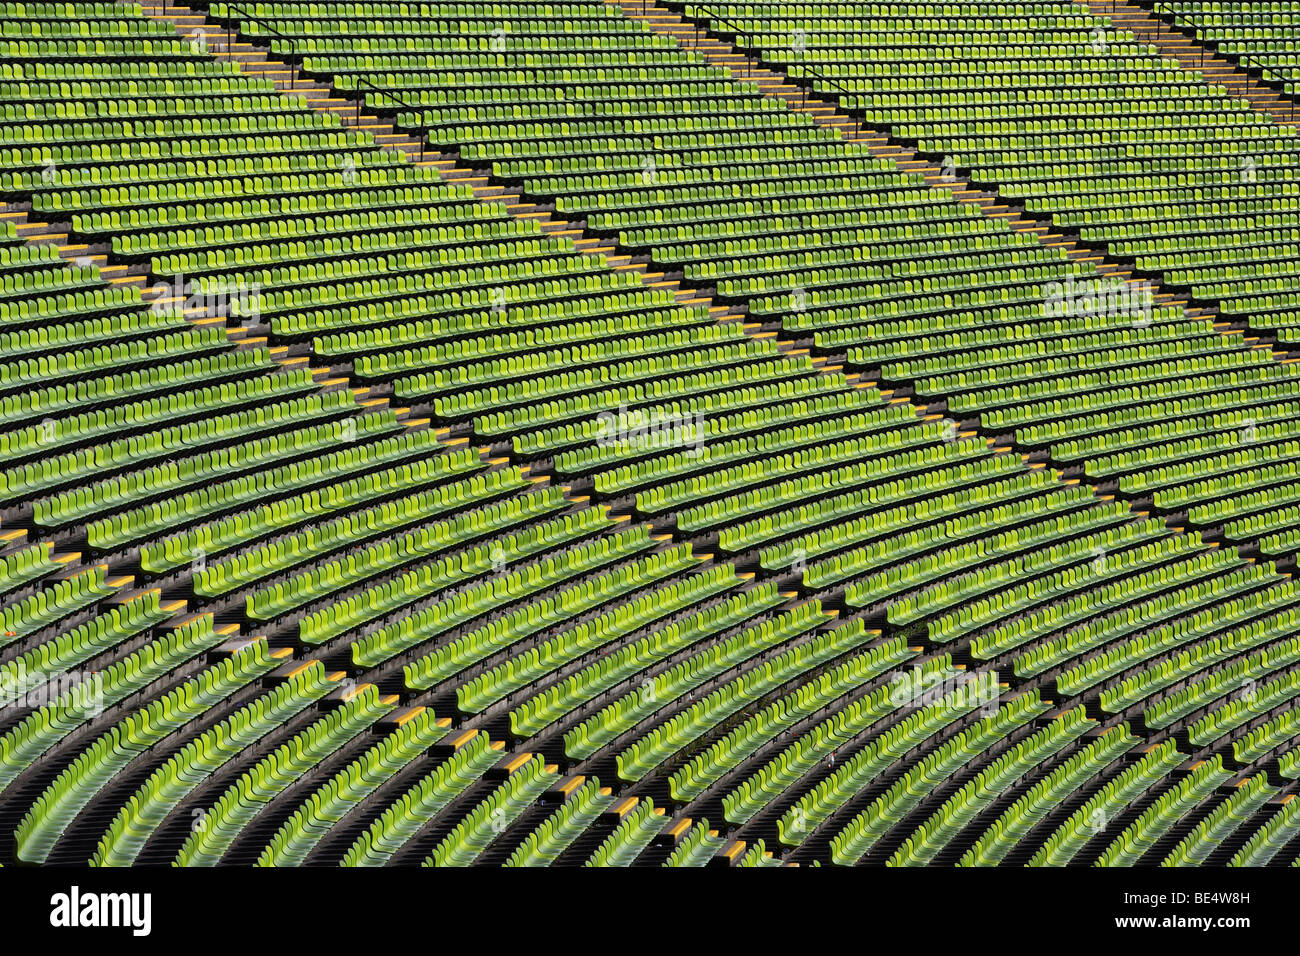 Olympiastadion München Stockfoto